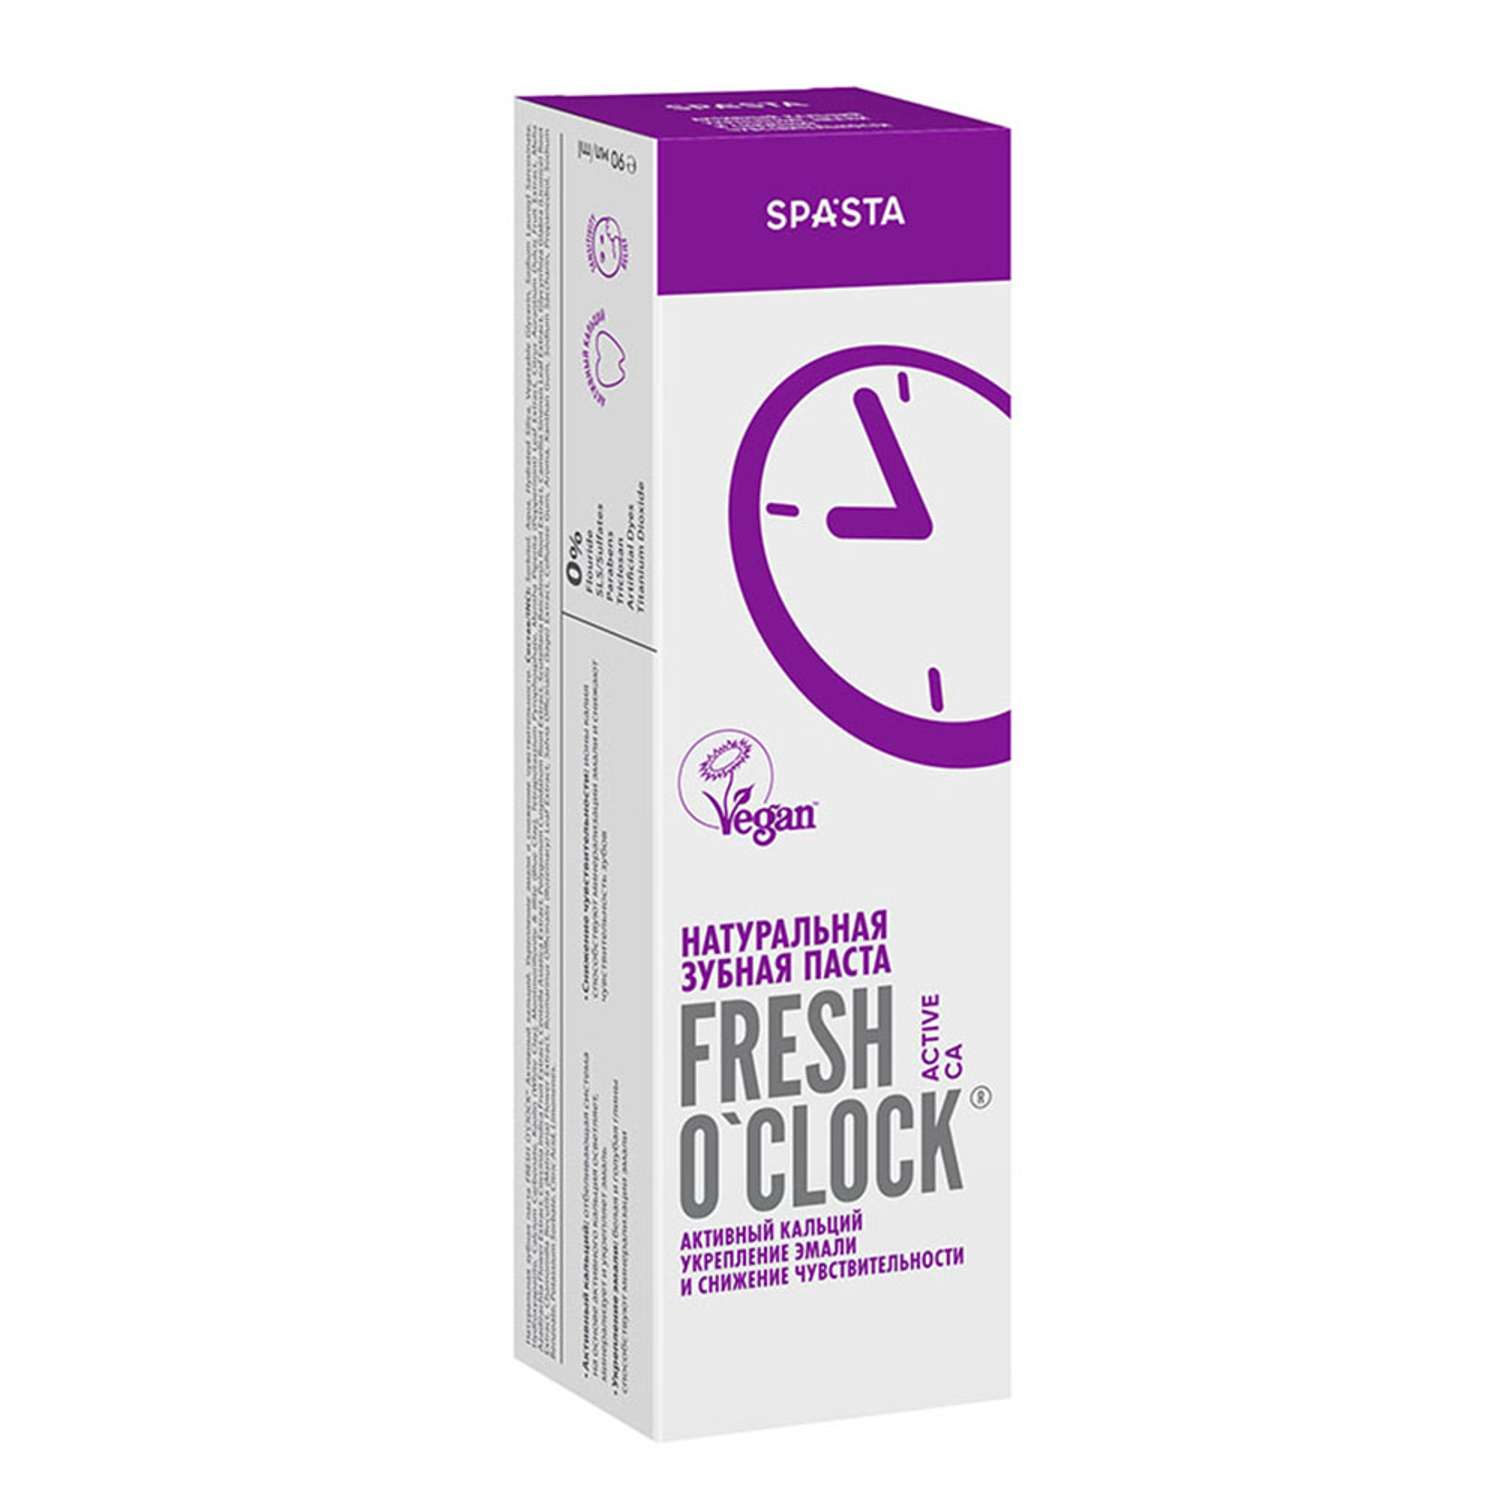 Натуральная зубная паста Spasta Fresh o’clock активный кальций укрепление эмали и снижение чувствительности 90мл - фото 2